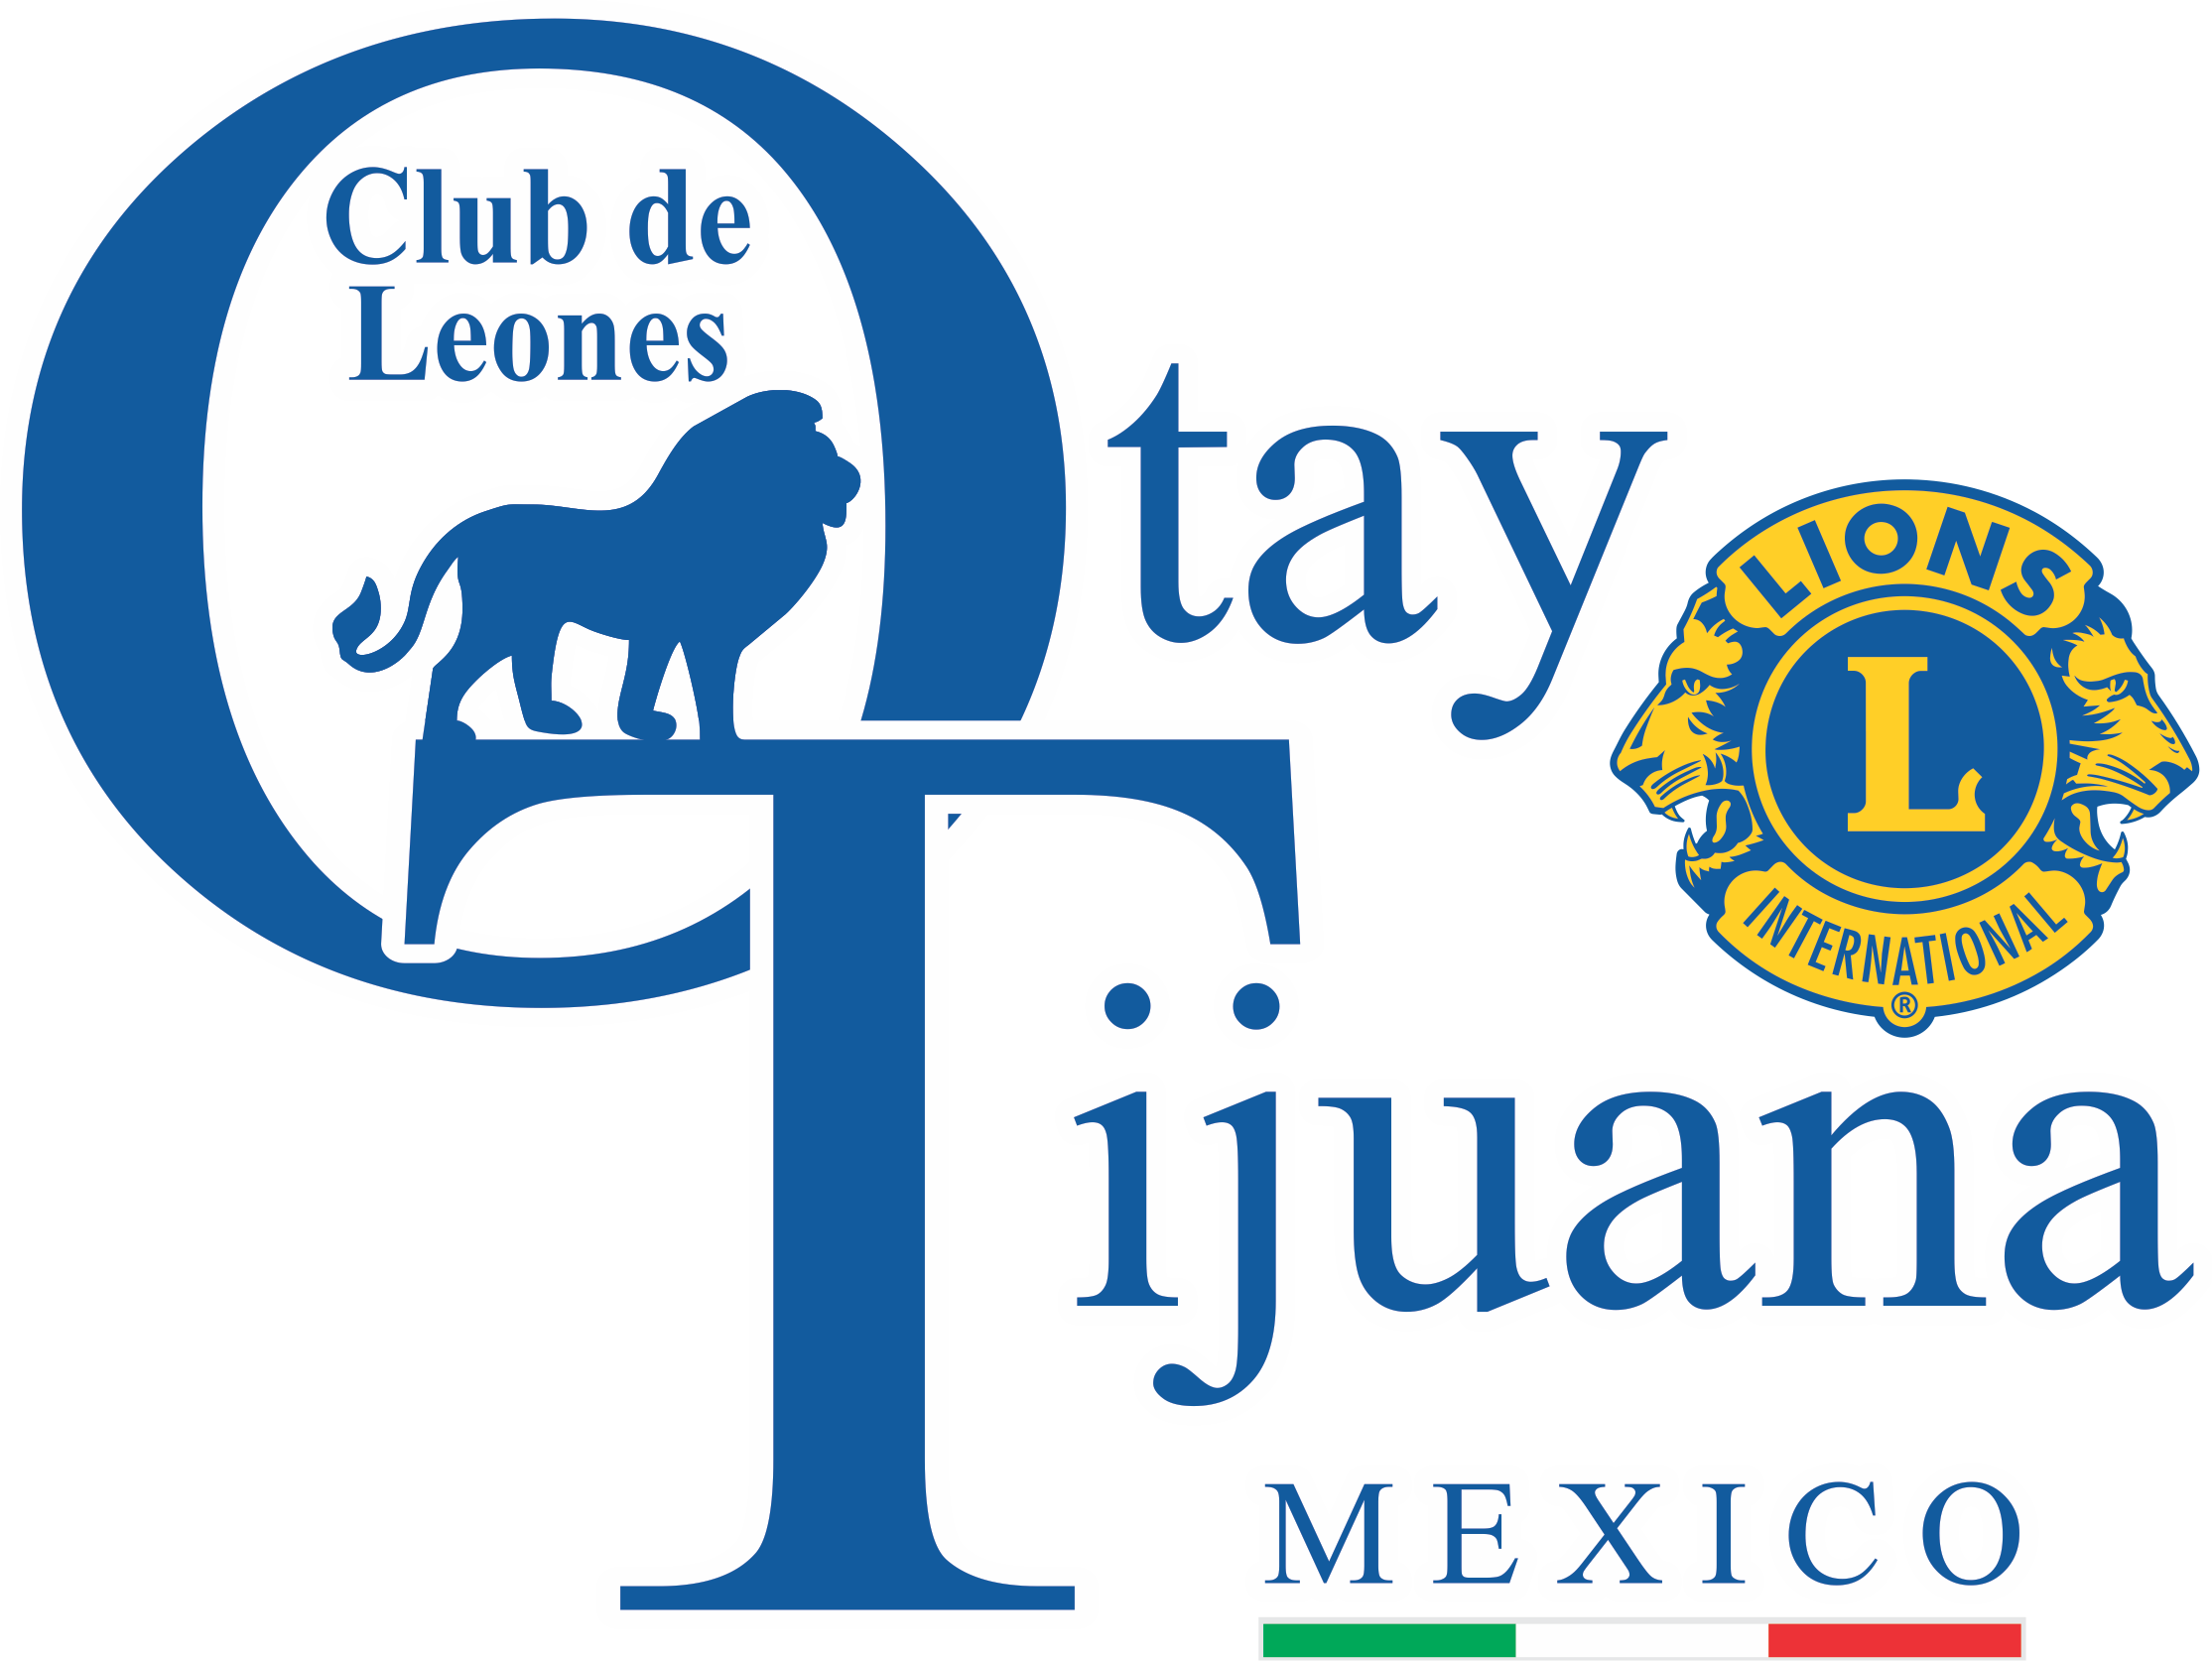 Club Otay Tijuana